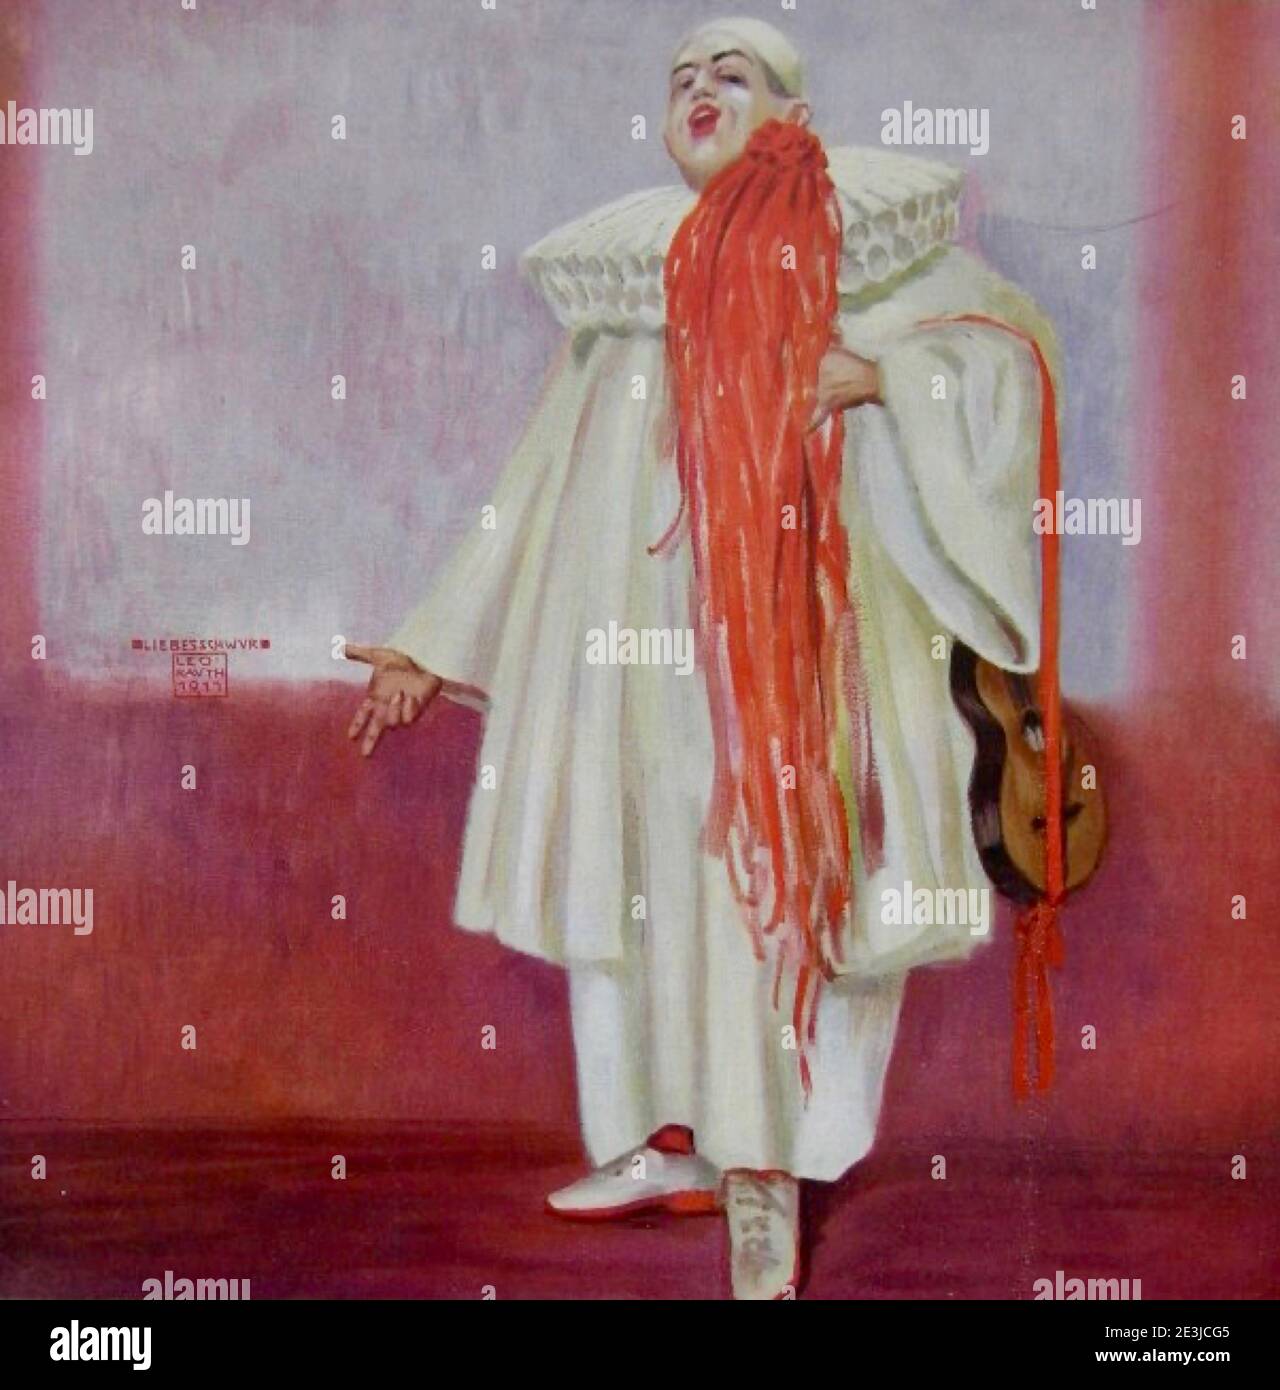 Kunstwerk von Leo Rauth genannt Liebesschwur. Ein Clown in weiß-rotem Kostüm verspricht seine Liebe. Platz kopieren, um Botschaft der Liebe hinzuzufügen. Stockfoto